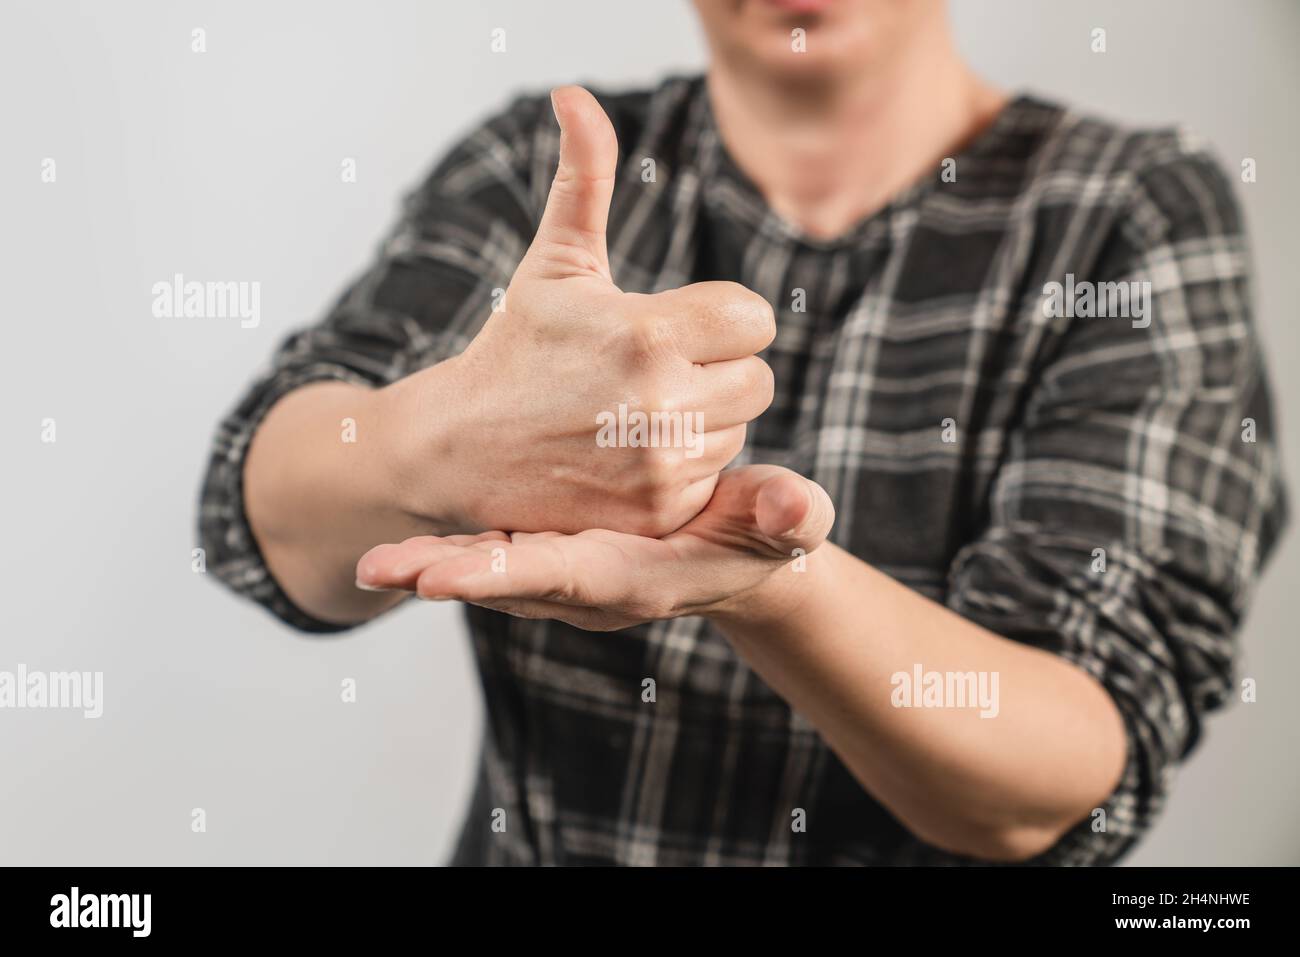 La mujer sorda muestra su mano para ayuda o ayuda como lenguaje de señas. Concepto de lenguaje corporal sordo . Fotografías de alta calidad Foto de stock